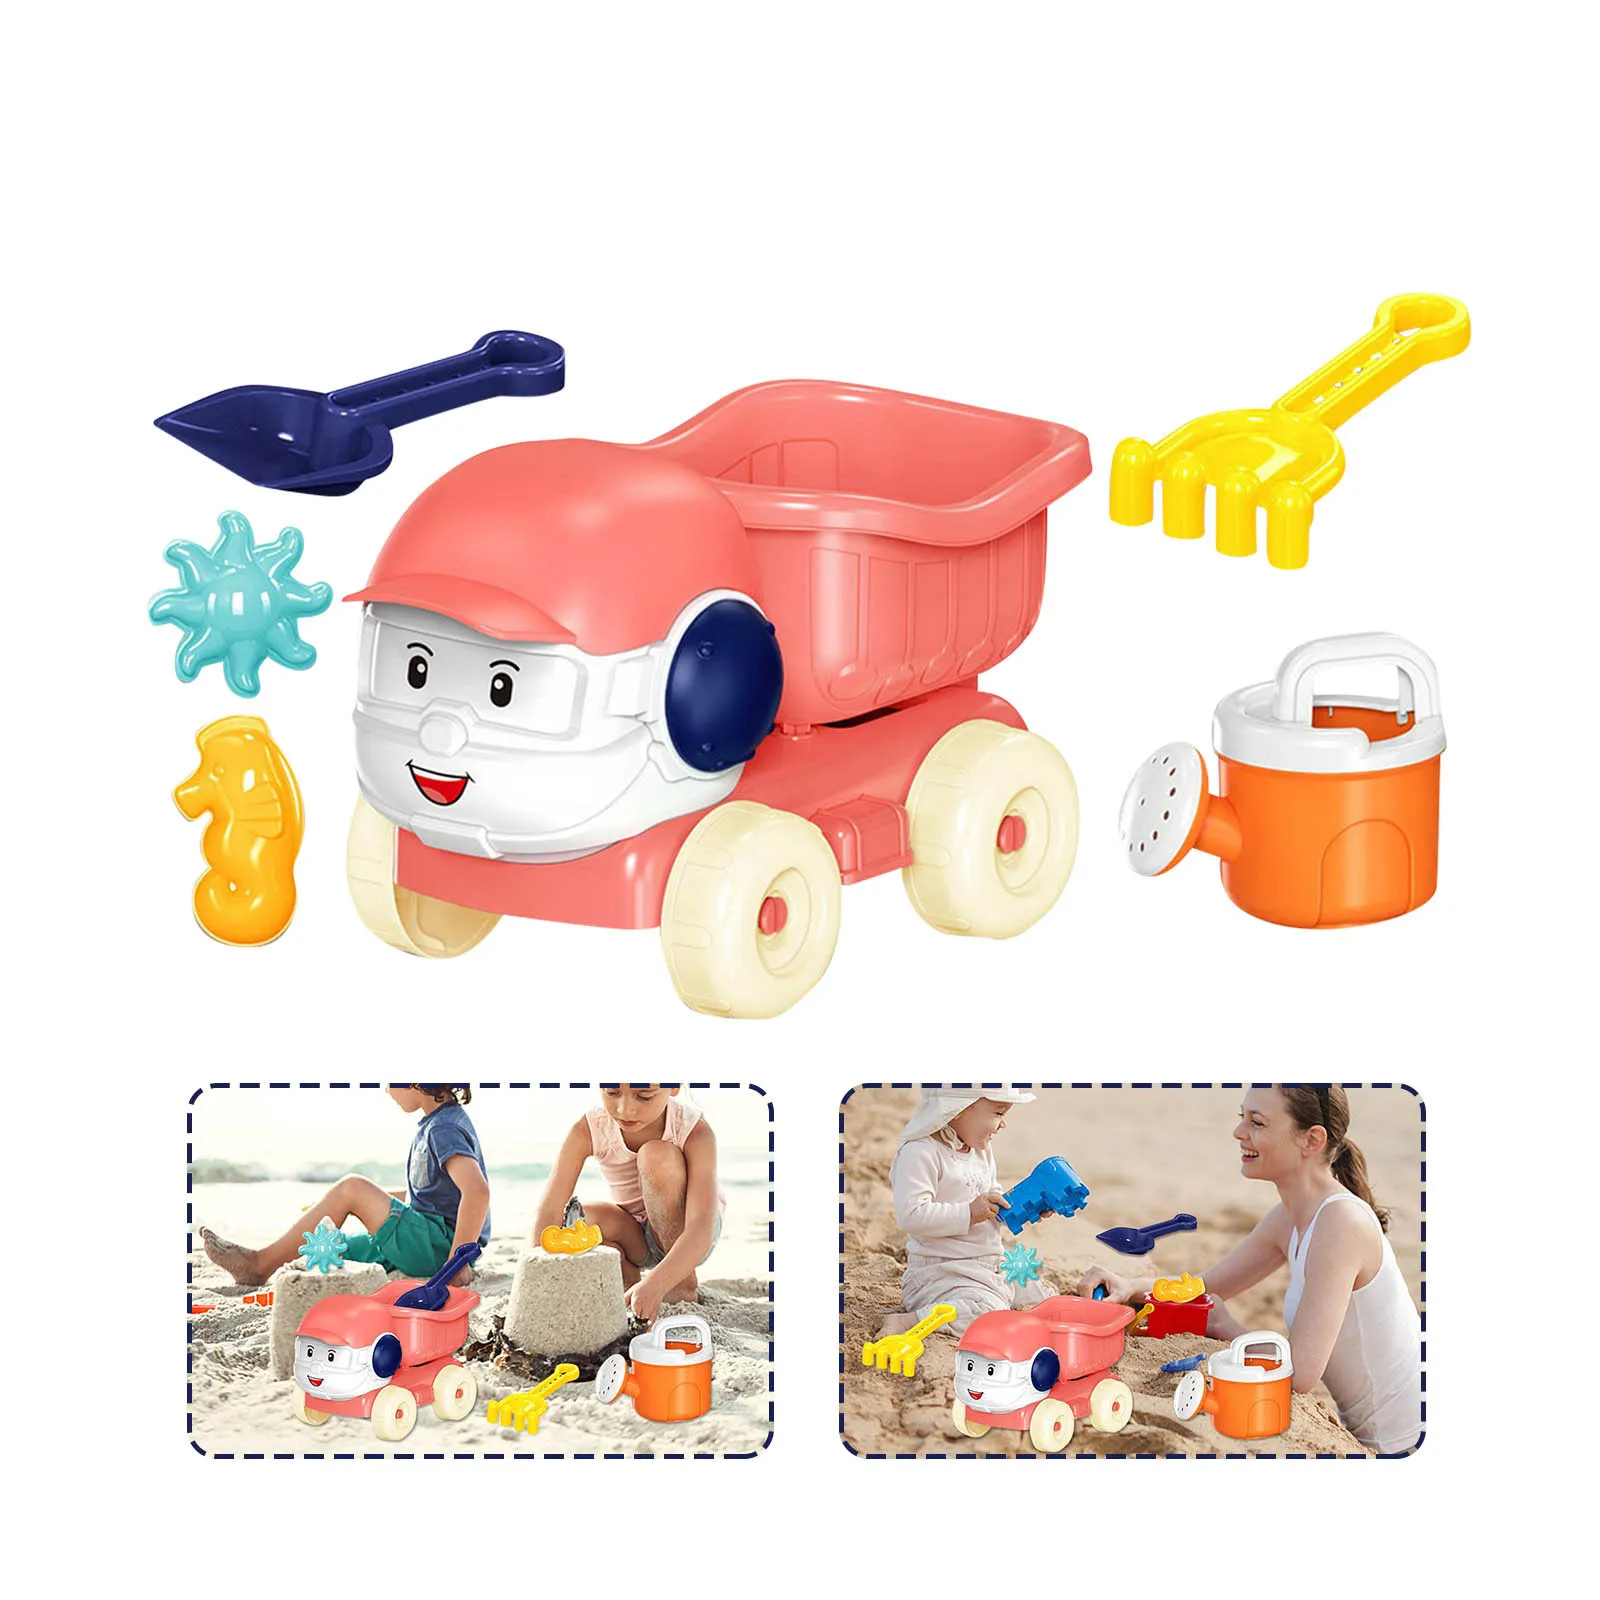 

6 шт. многофункциональных интерактивных образовательных игрушек для пляжа и снега для родителей и детей, набор игр для детского бассейна, надувные игрушки для пляжа